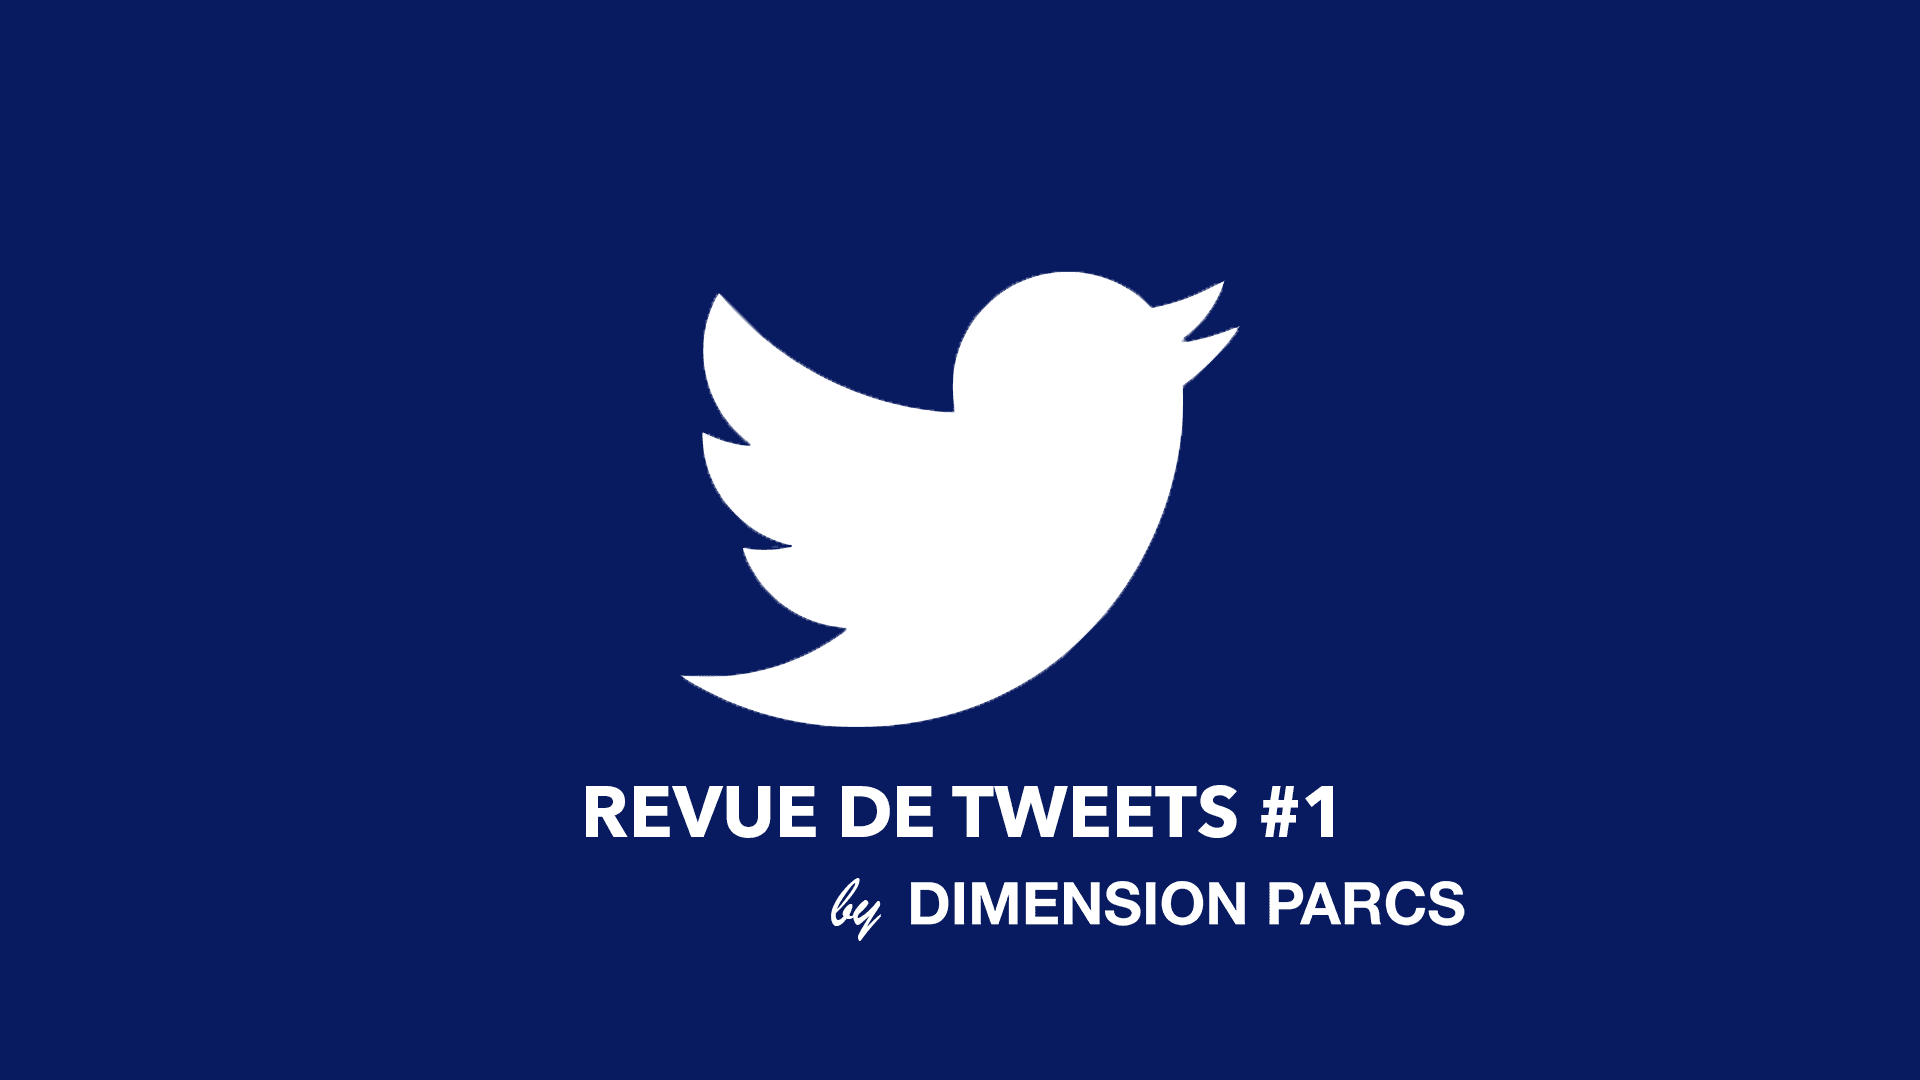 Revue de tweets #1 by Dimension Parcs